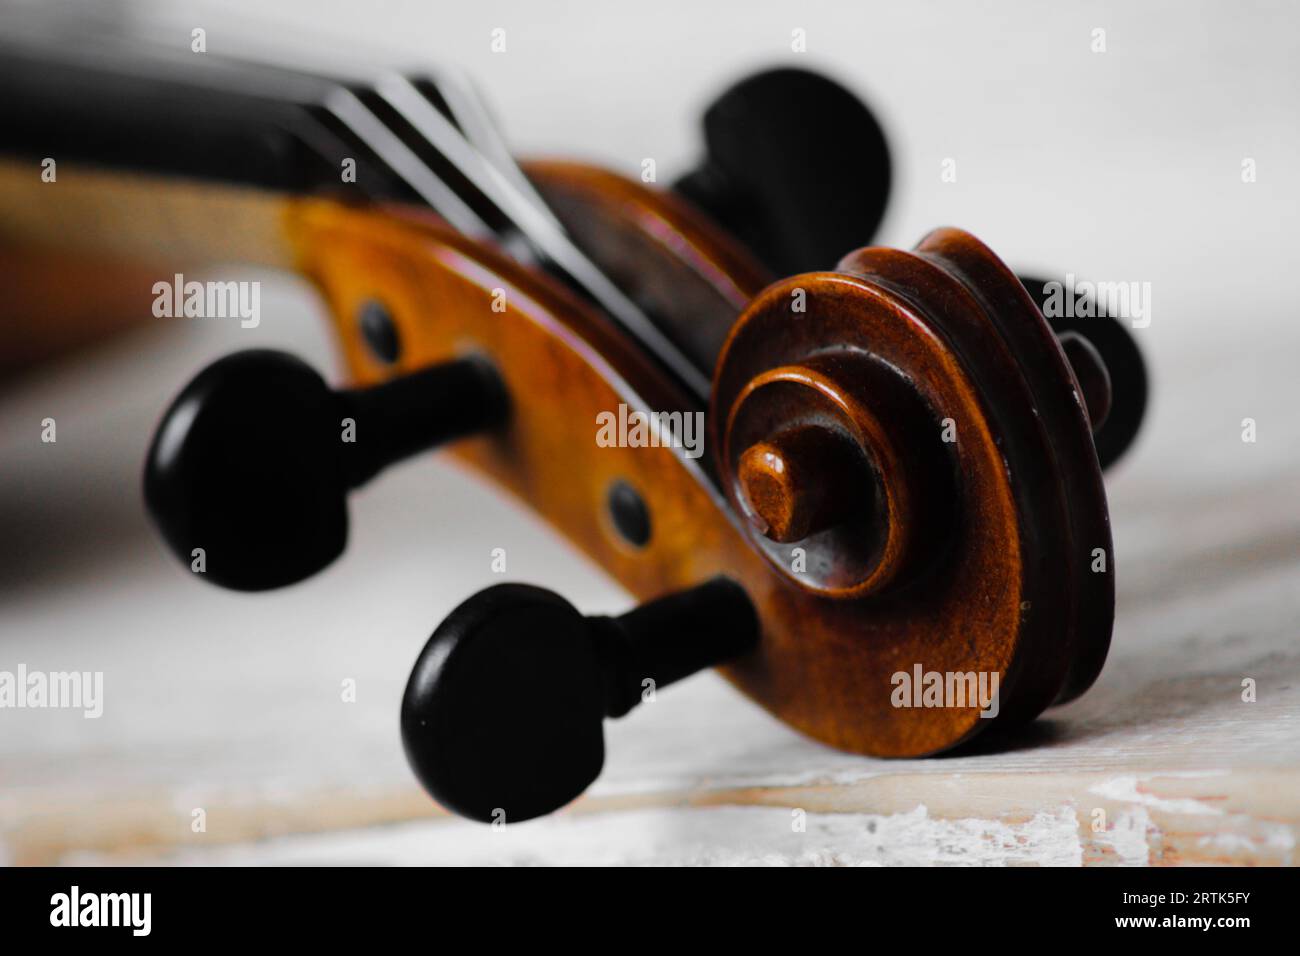 13 instrumentos musicales para niños pequeños que estimulan su